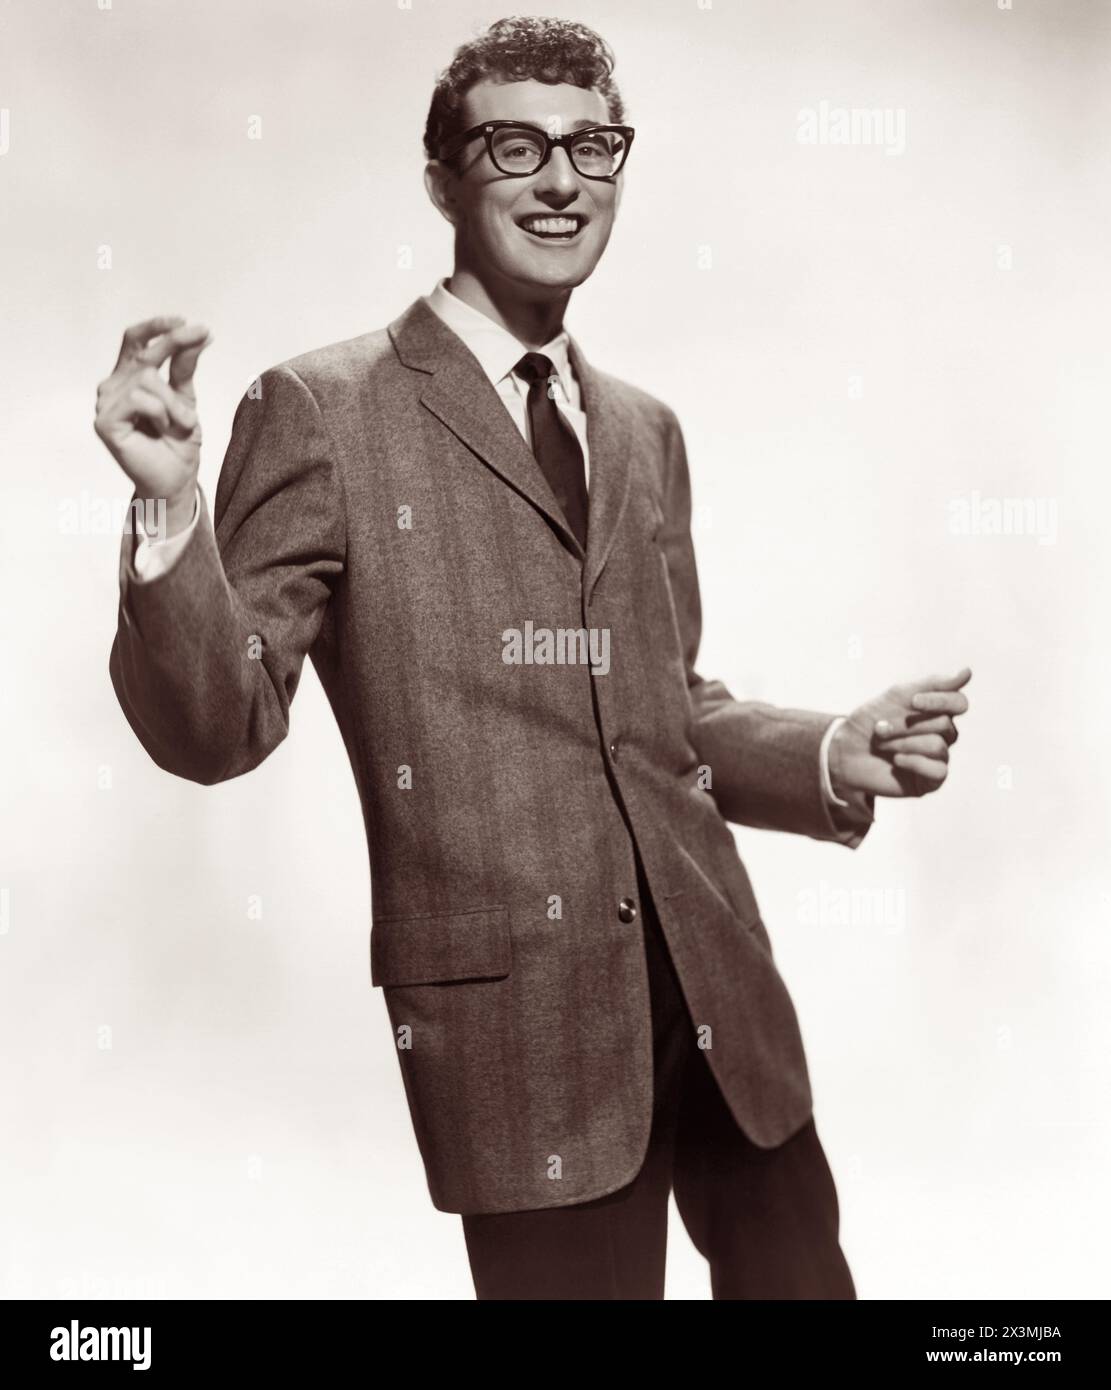 Buddy Holly, pionnier du rock and roll américain en 1957. Holly meurt à 22 ans dans un tragique accident d'avion en 1959, avec les musiciens Richie Valens et J. P. Richardson (The Big Bopper), et le pilote Roger Peterson. (ÉTATS-UNIS) Banque D'Images